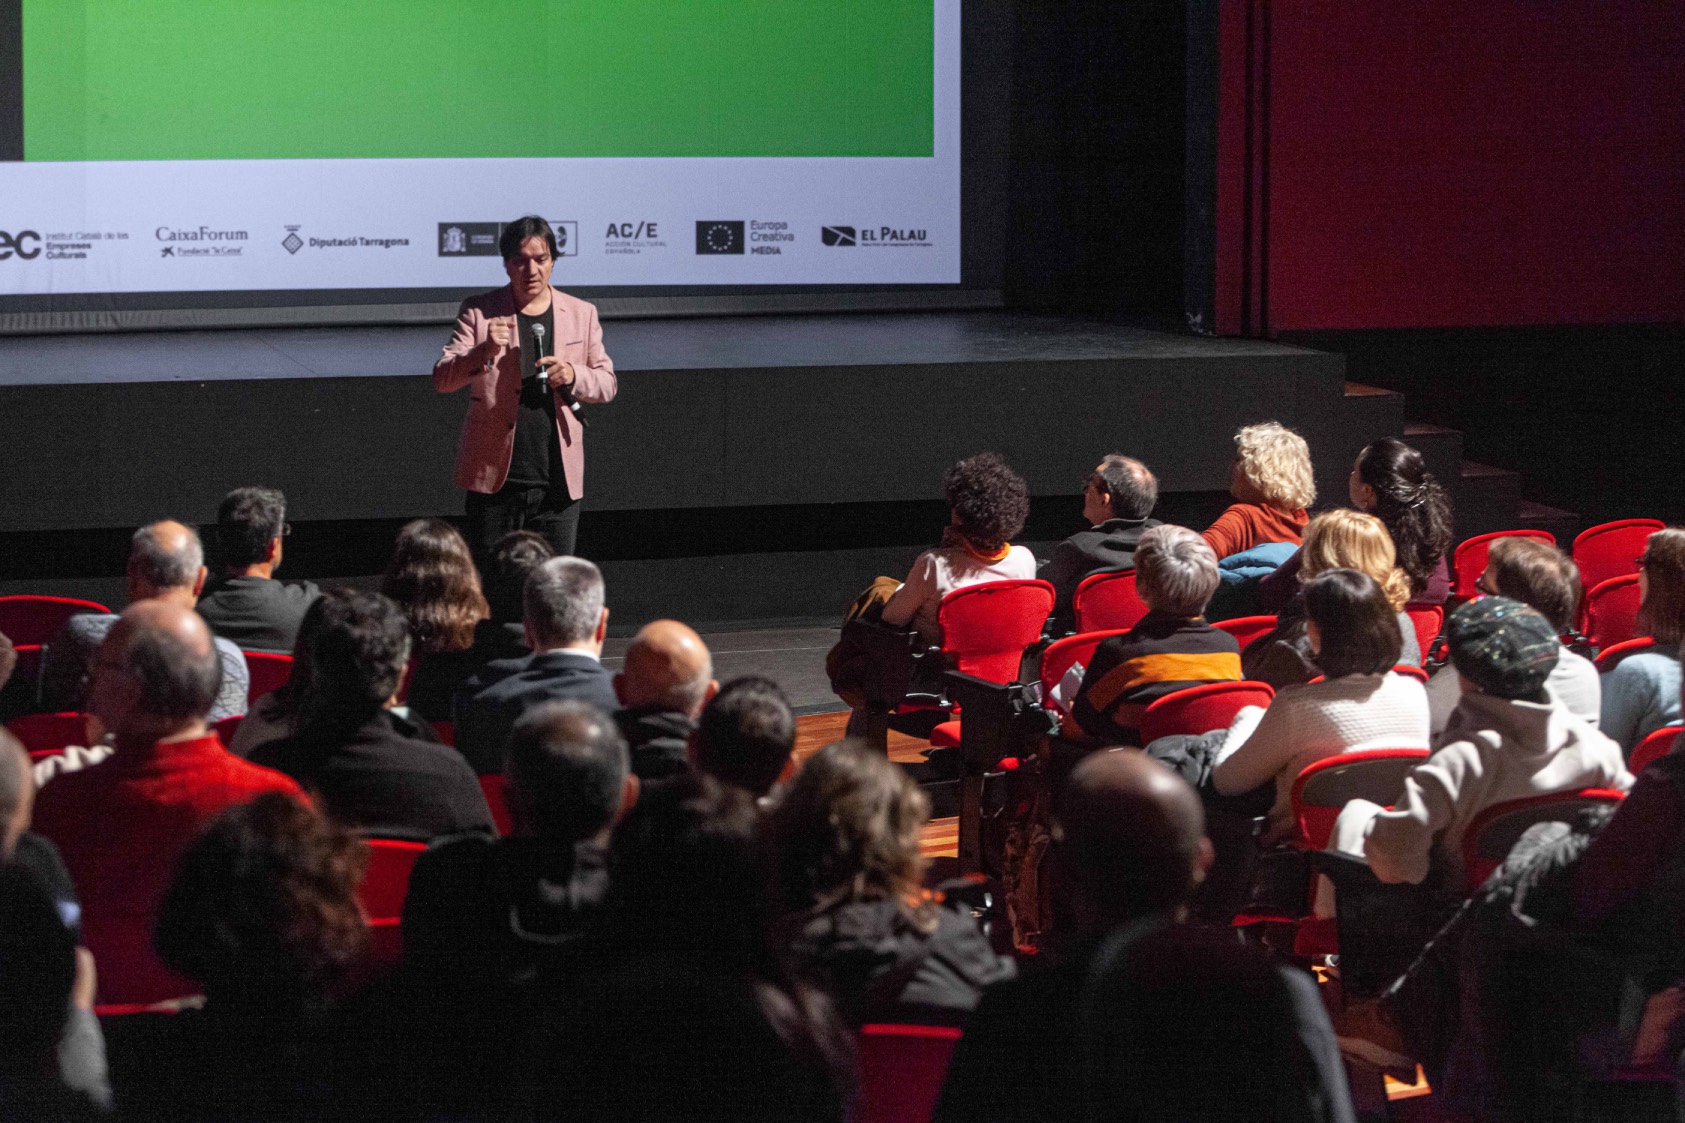 El Festival REC colabora con el Ciclo de Cine Europeo Lux, organizado por Europe Direct Tarragona que se llevará a cabo en Tarragona del 17 al 21 de abril